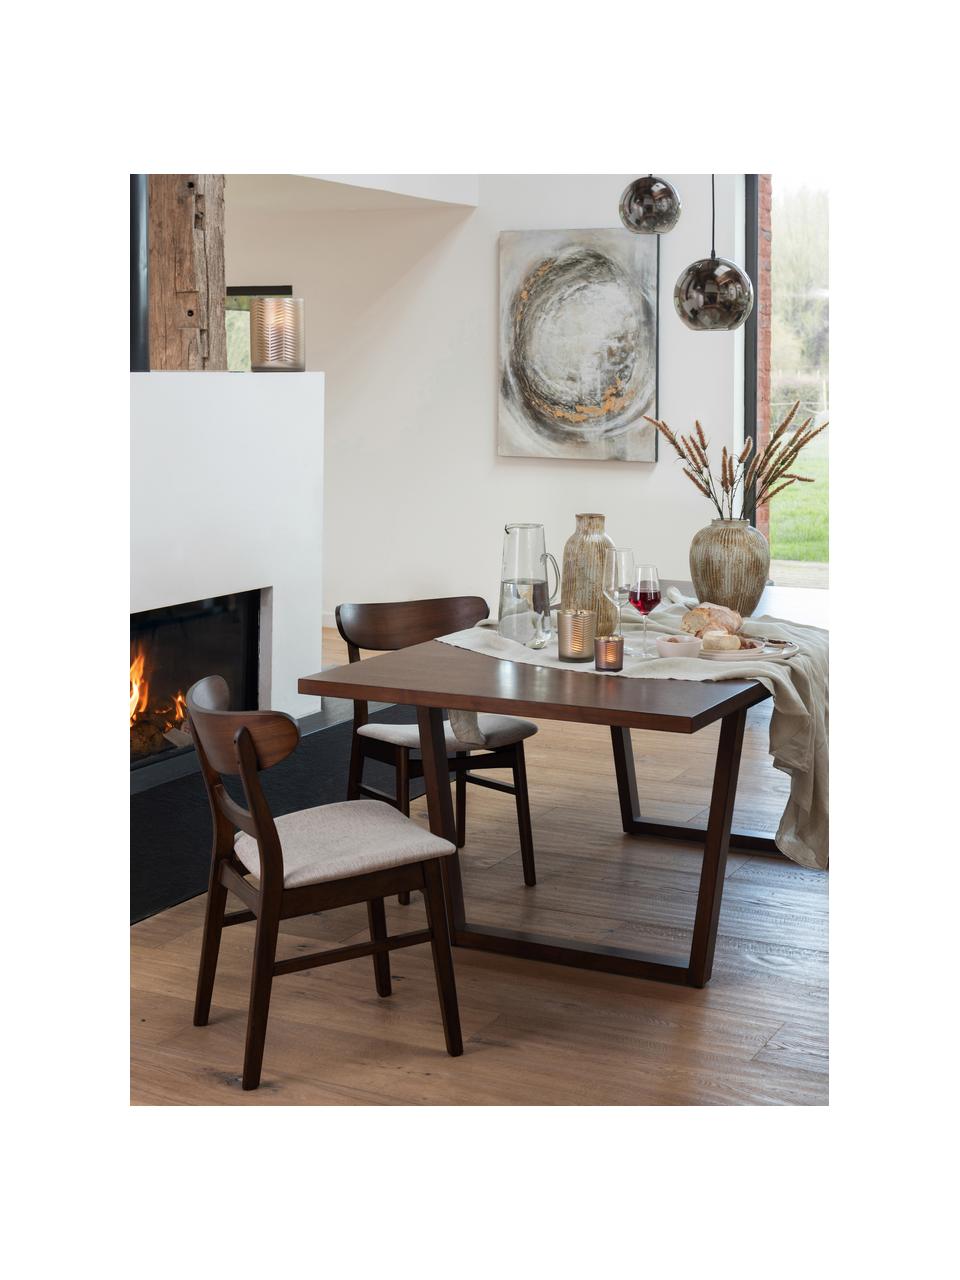 Holzstuhl Ken mit gepolsterter Sitzfläche, Bezug: Polyester, Gestell: Gummibaumholz, Braun, Beige, B 57 x T 53 cm